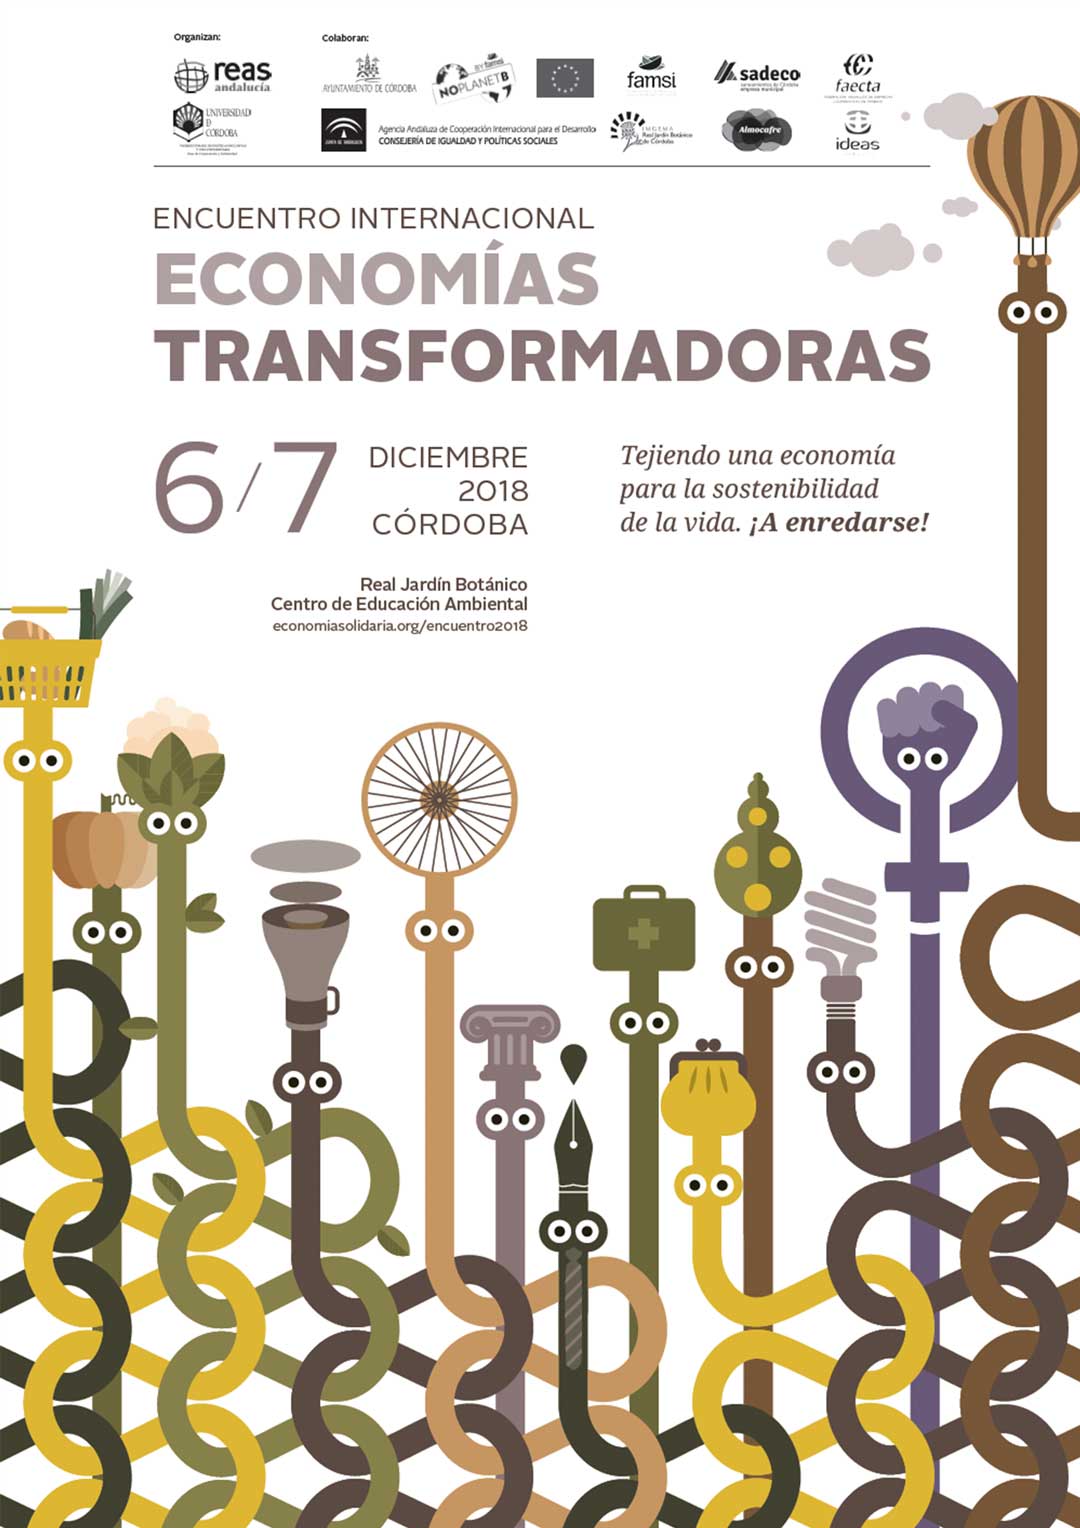 Proyecto Encuentro Internacional de Economías Transformadoras  | El alambre